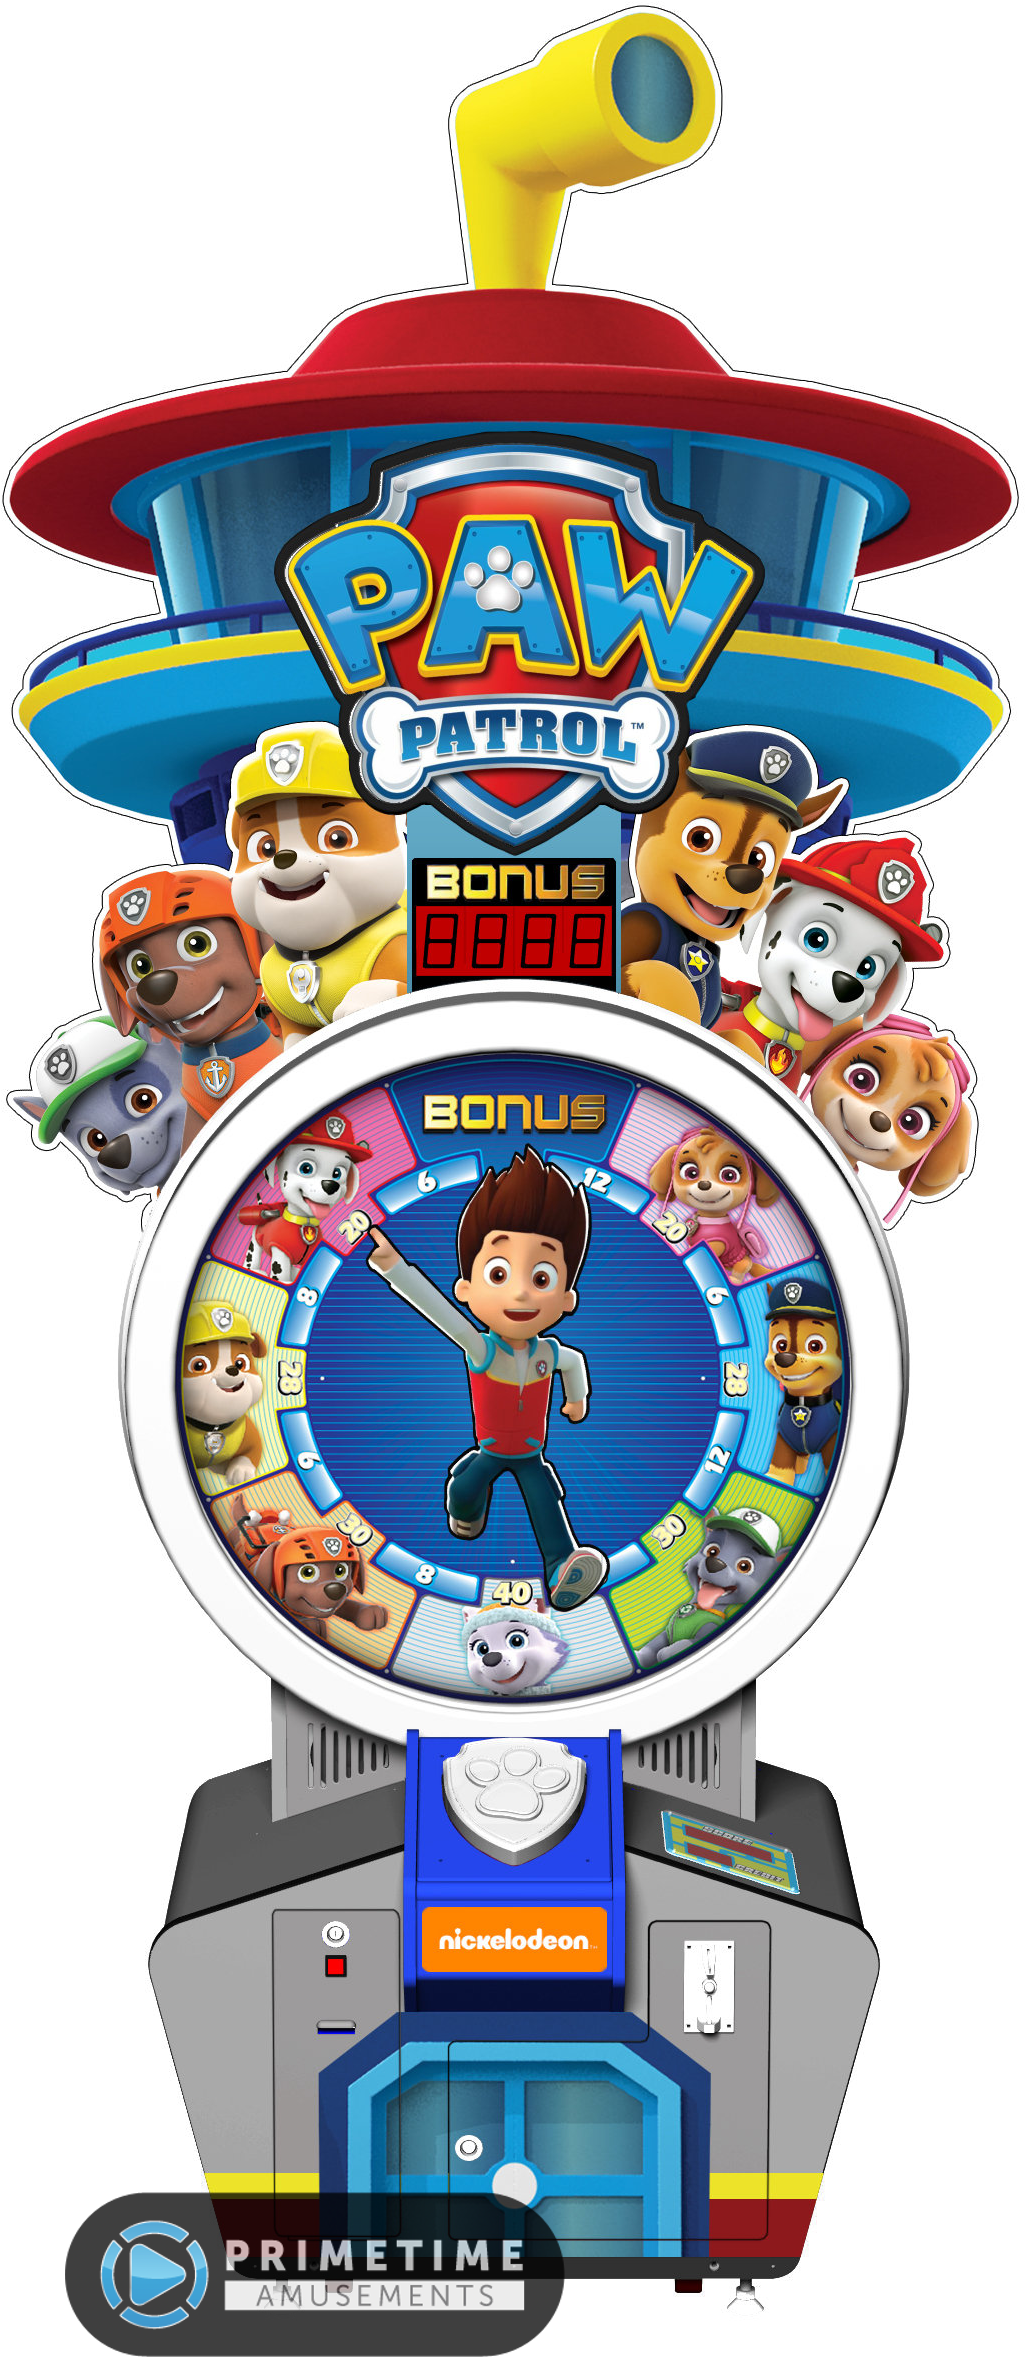 1405 X 2550 7 - Paw Patrol Arcade Game (1405x2550)